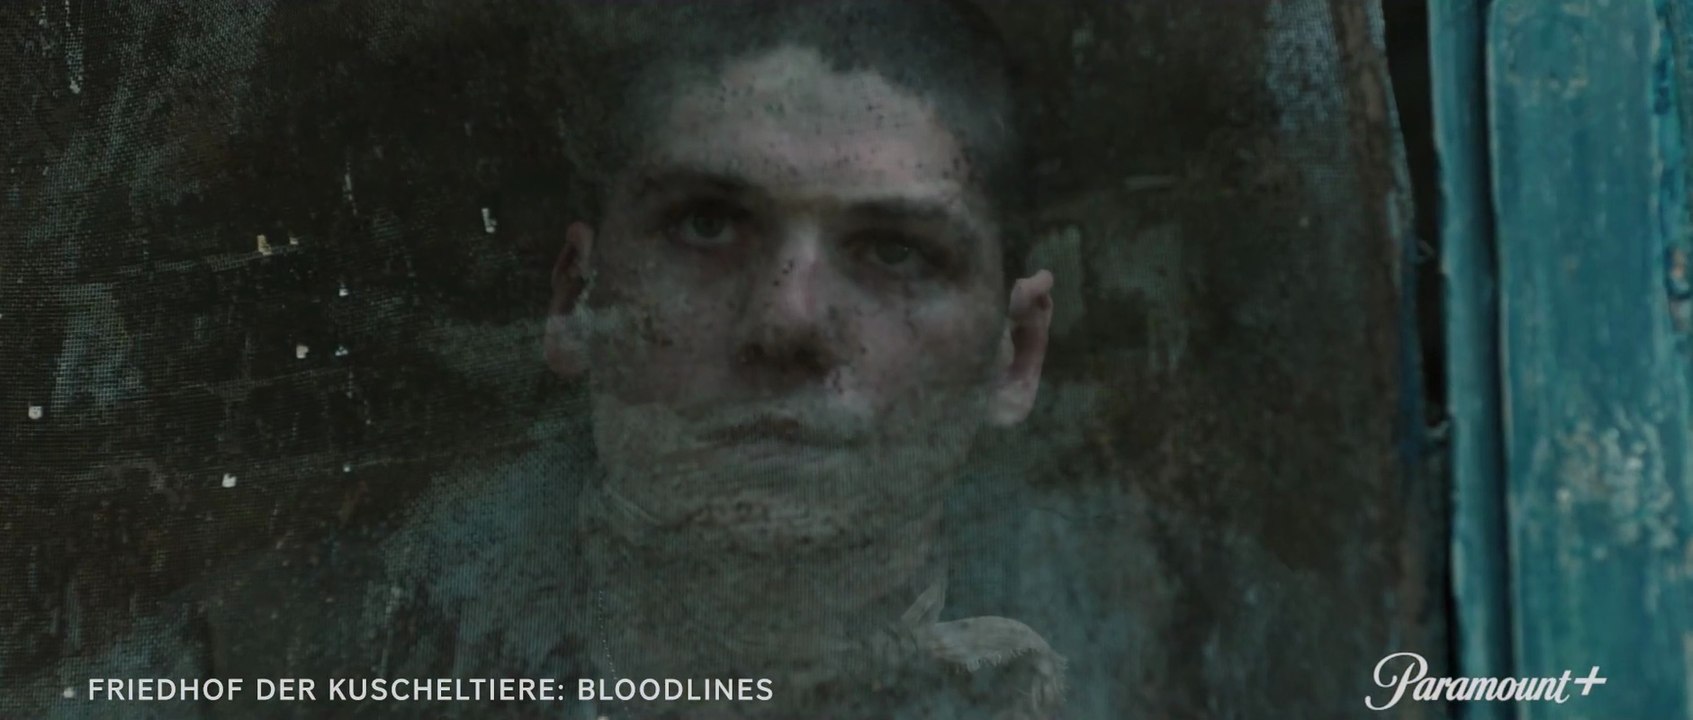 Friedhof der Kuscheltiere: Bloodlines - Trailer (Deutsch) HD